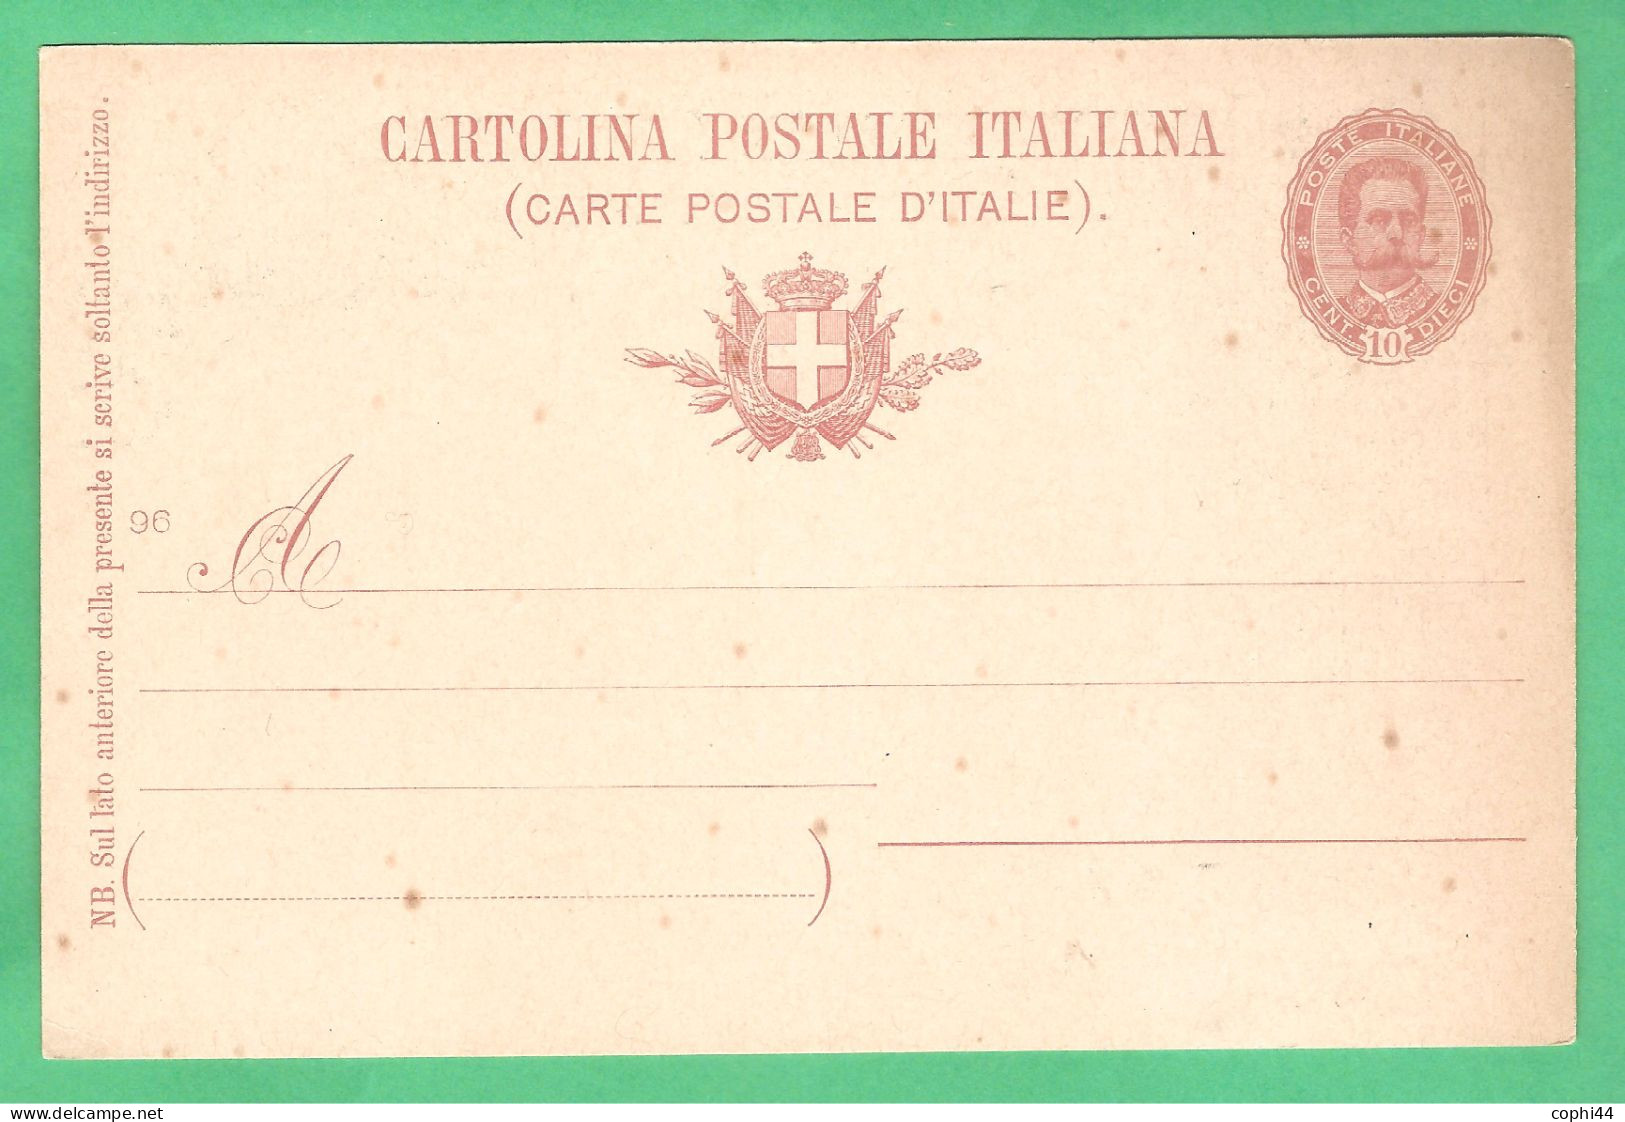 REGNO D'ITALIA 1896 CARTOLINA POSTALE NOZZE REALI MIL. 96 10 C Verde Scuro (FILAGRANO C29-5) NUOVA - Stamped Stationery